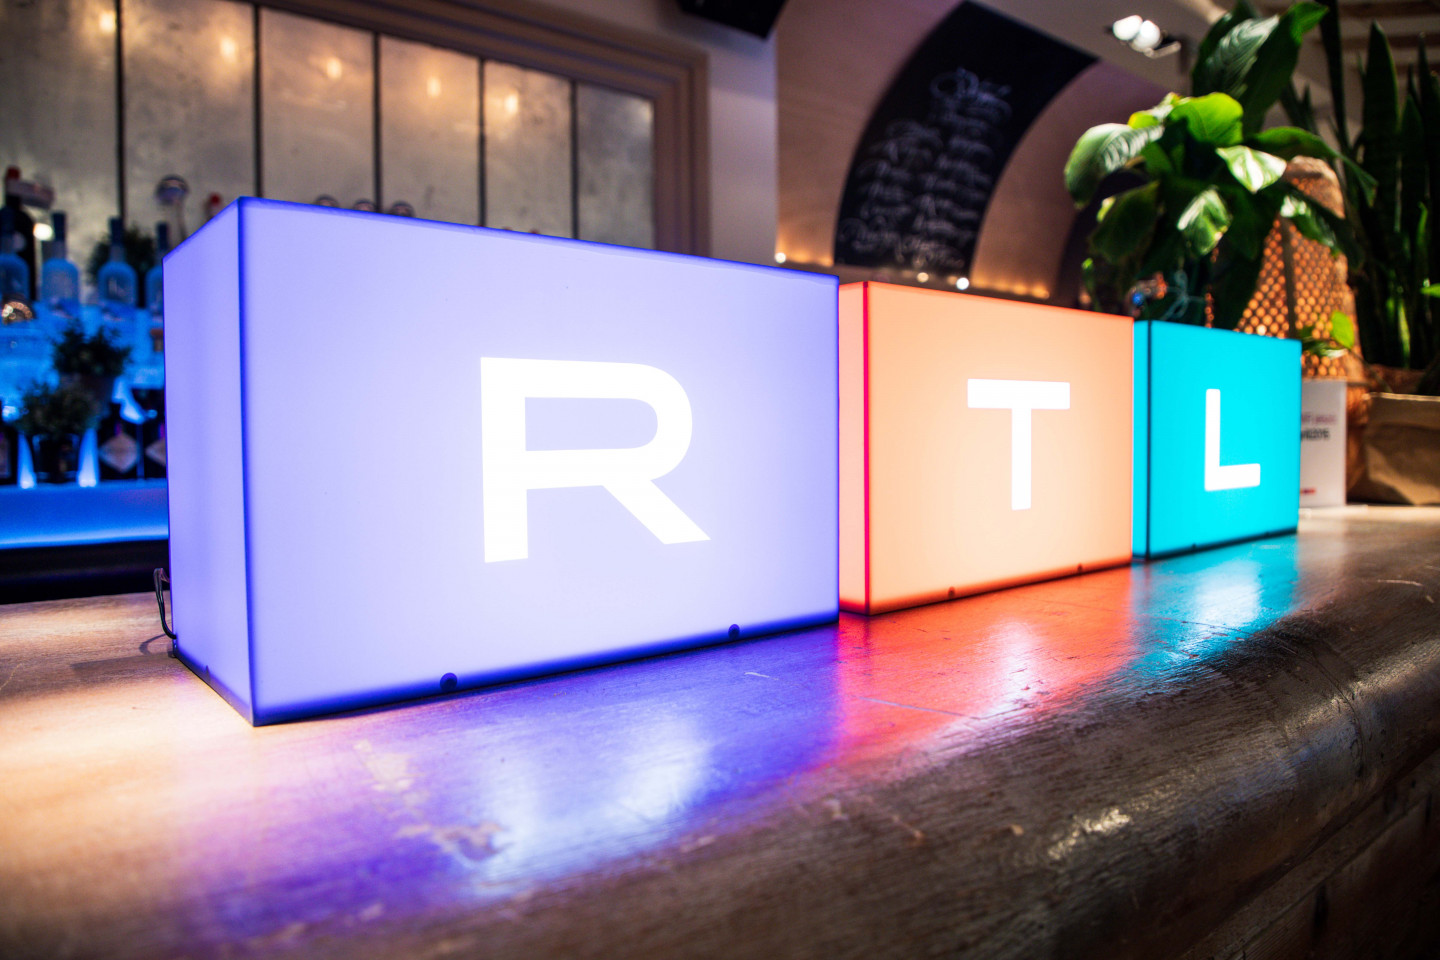 Vége: egyszerre távozik az RTL három közönségkedvenc műsora, már tudjuk, mi lesz helyettük képernyőn